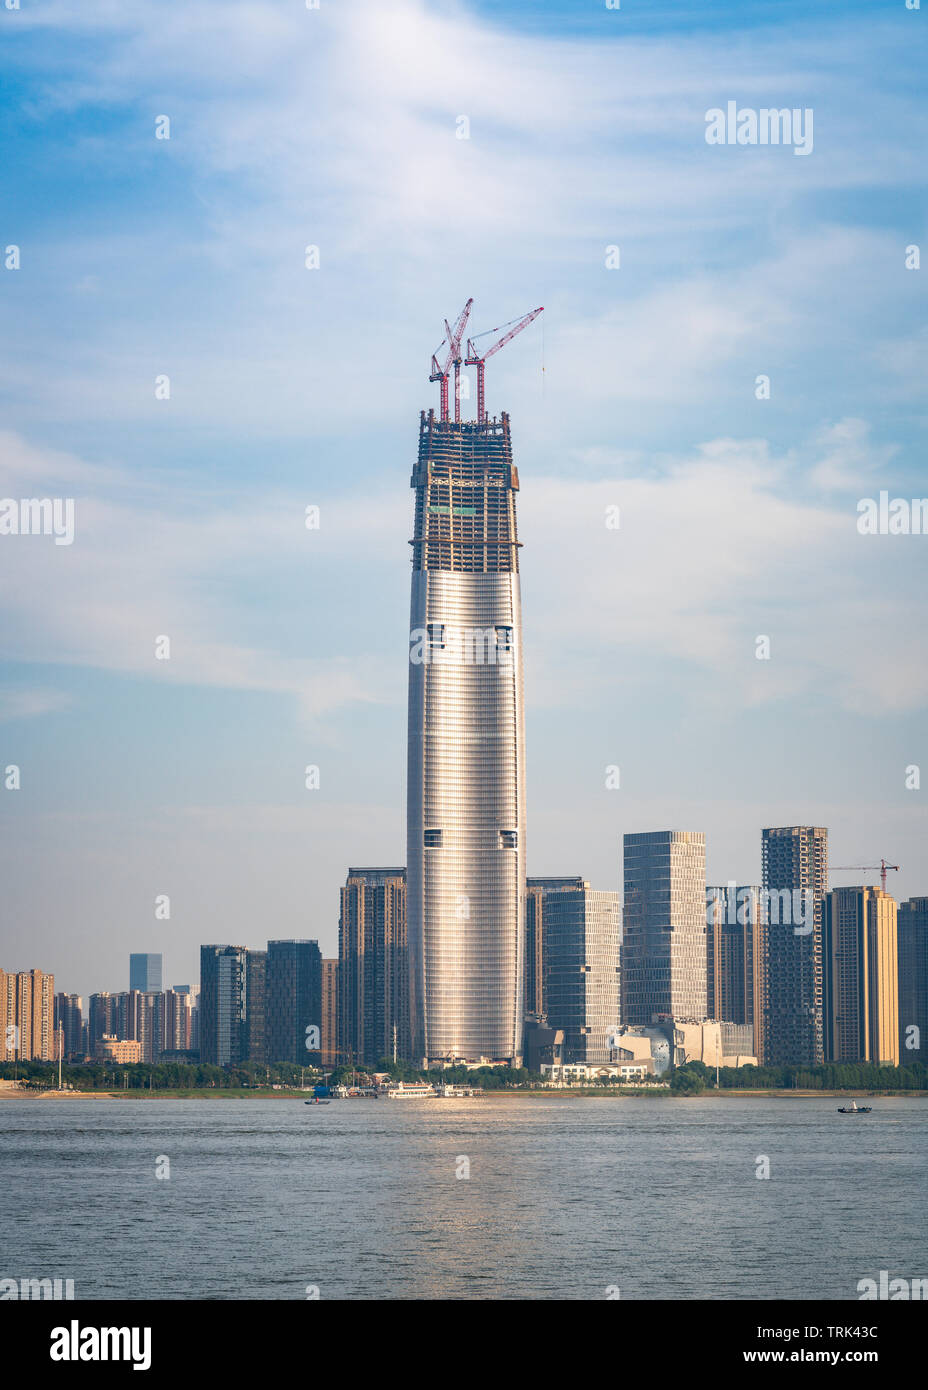 Wuhan Yangtze River et skyline avec gratte-ciel en construction en 2019 dans le Hubei Wuhan Chine Banque D'Images